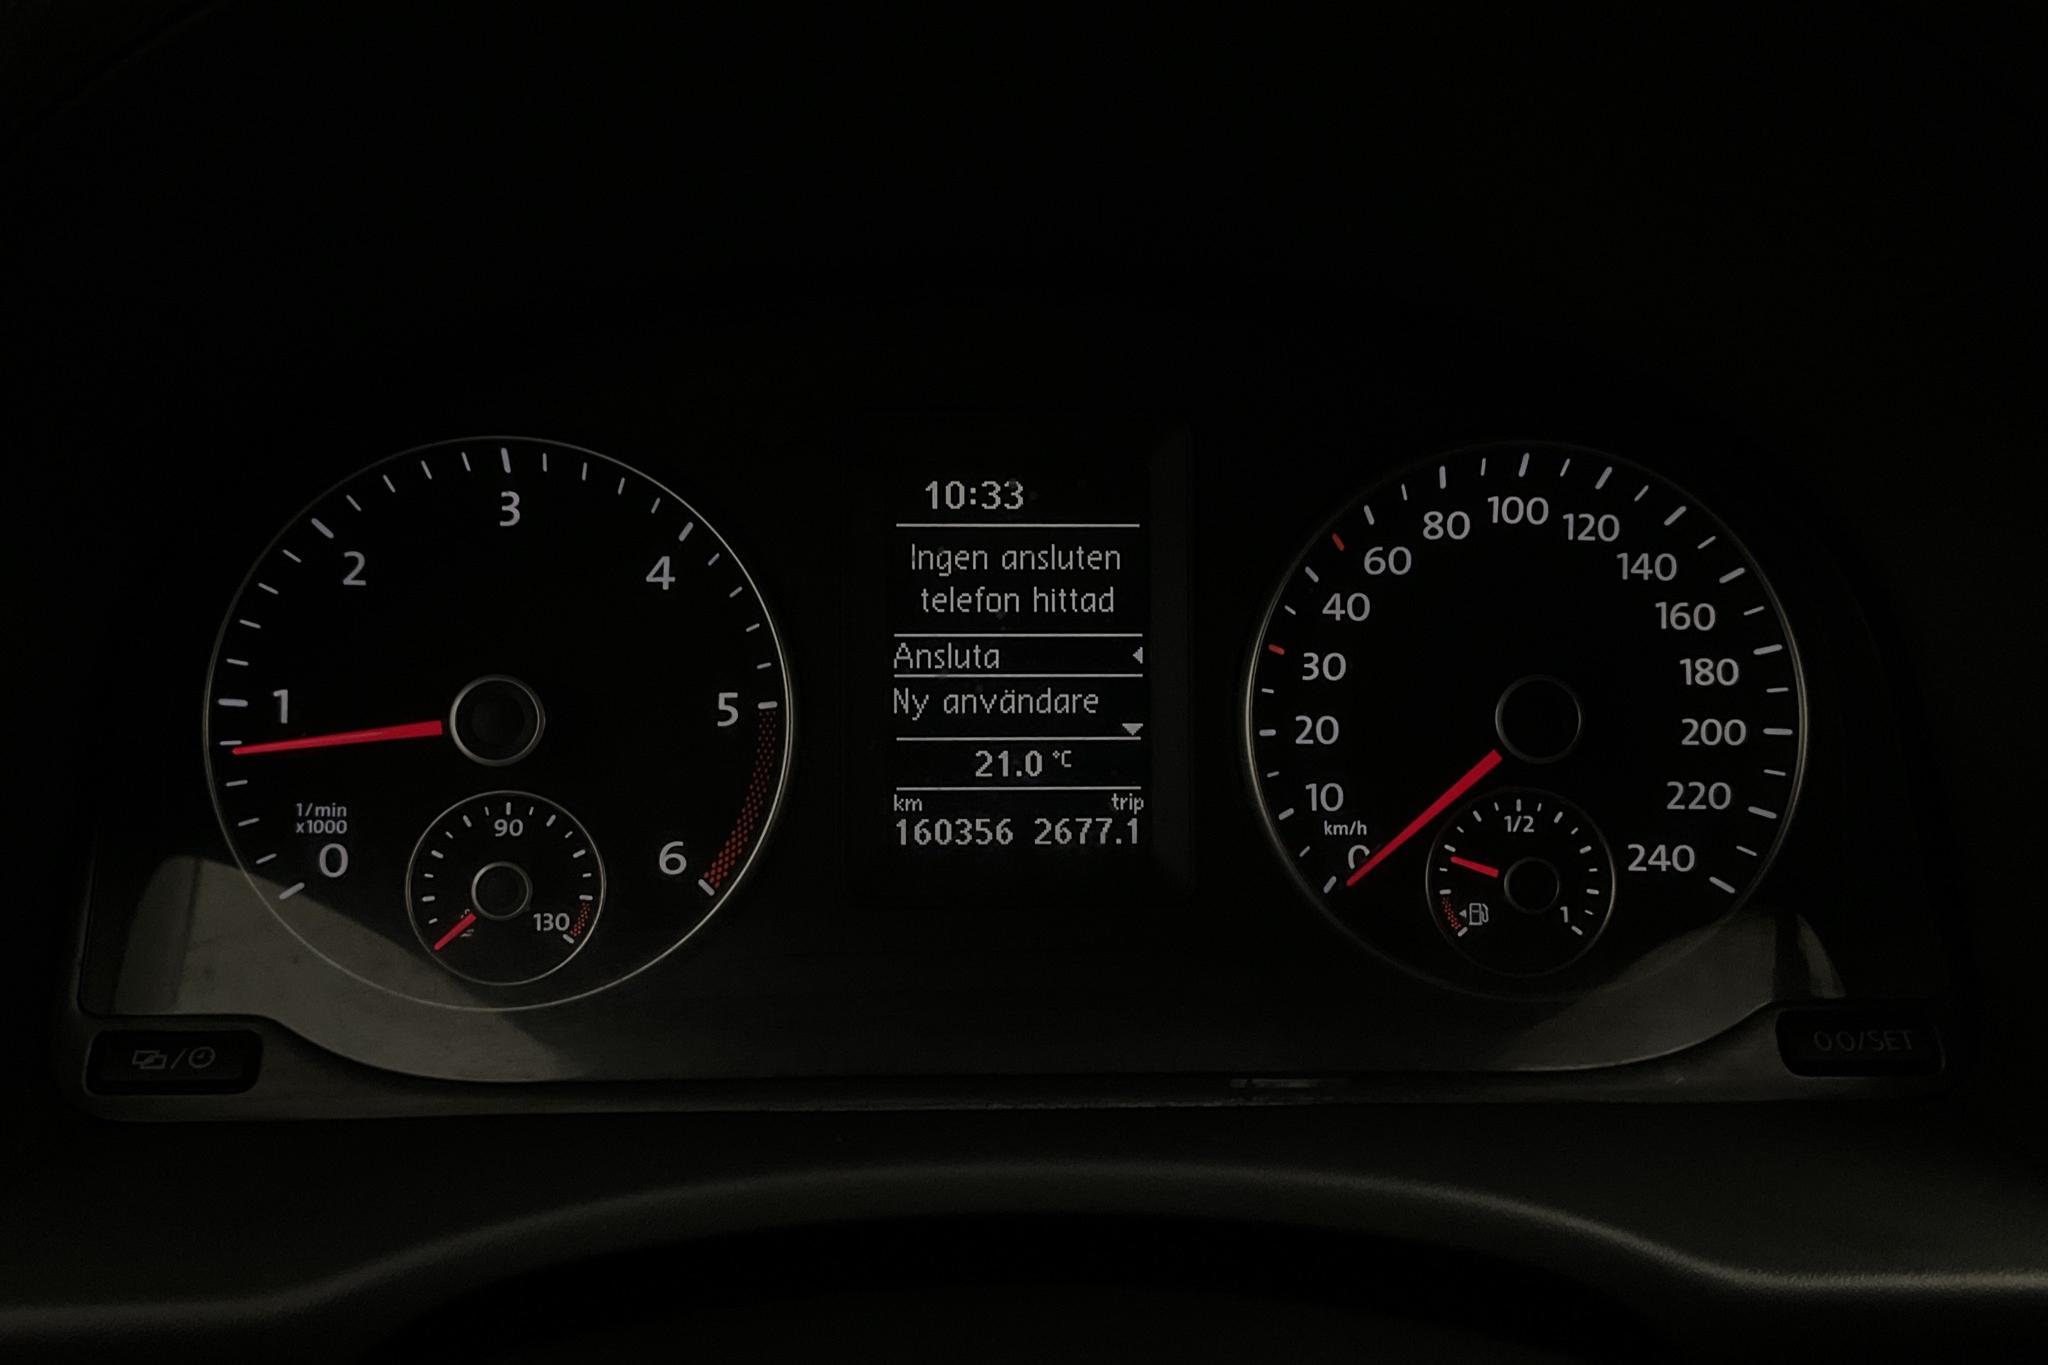 VW Caddy 1.6 TDI Maxi Skåp (102hk) - 16 035 mil - Manuell - vit - 2014